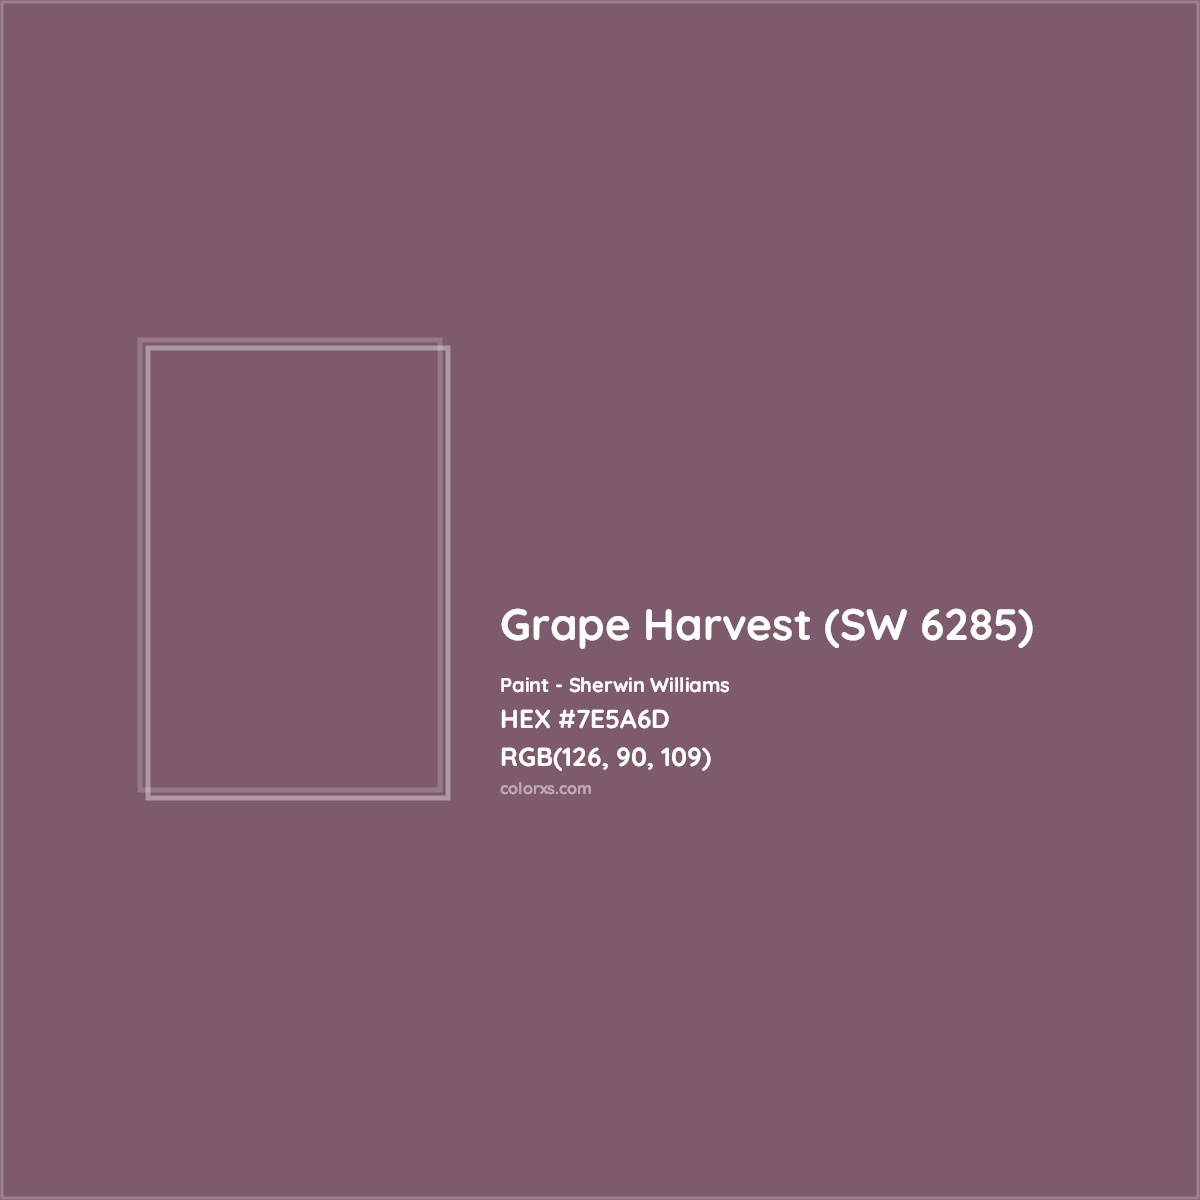 HEX #7E5A6D Grape Harvest (SW 6285) Paint Sherwin Williams - Color Code